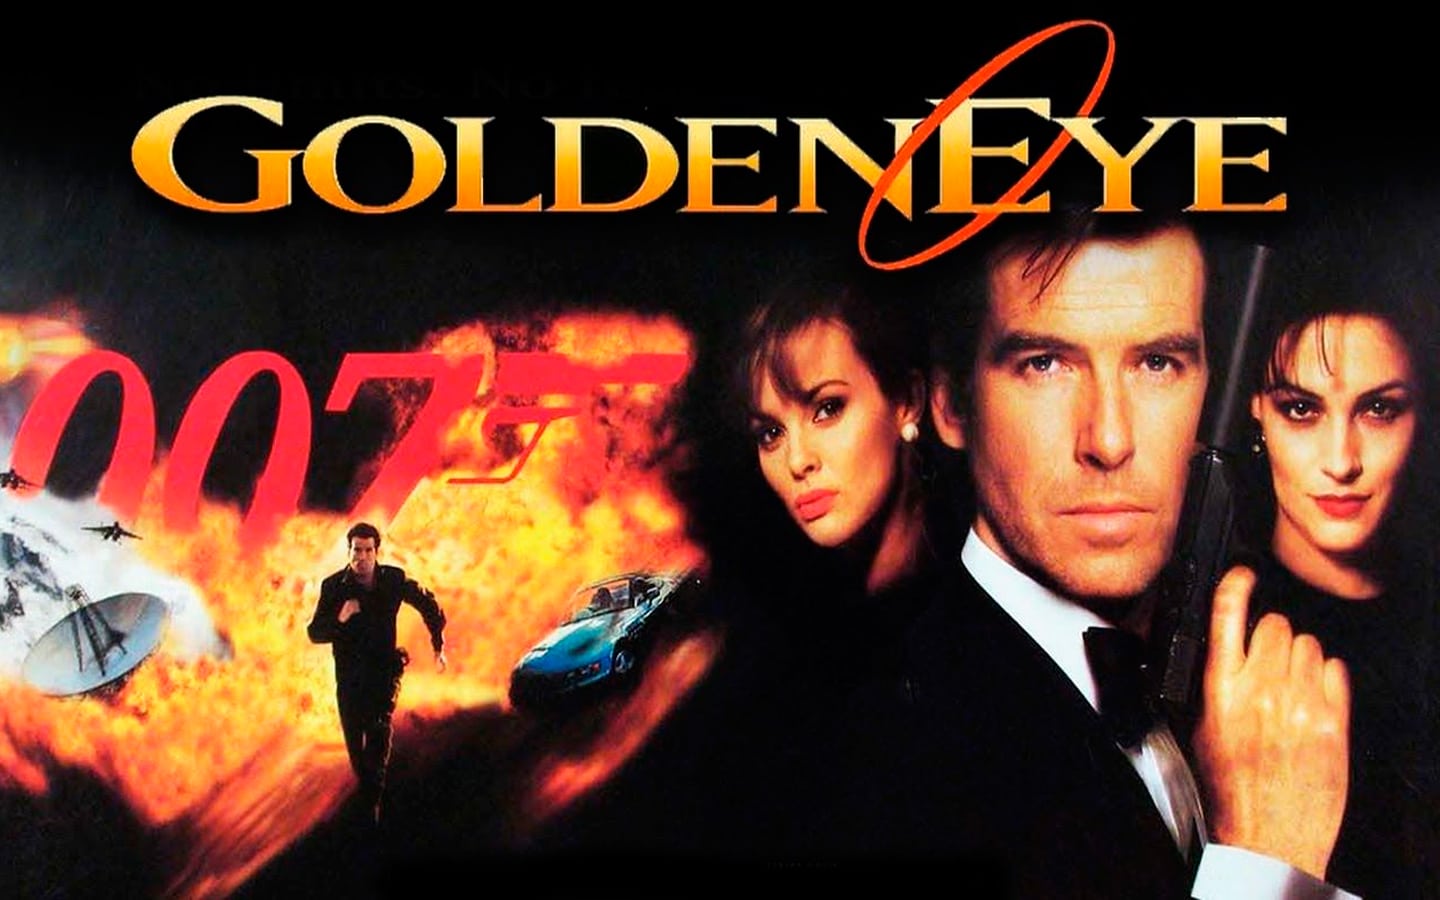 Golden Eye 007 Remaster podría hacerse realidad, según marca registrada